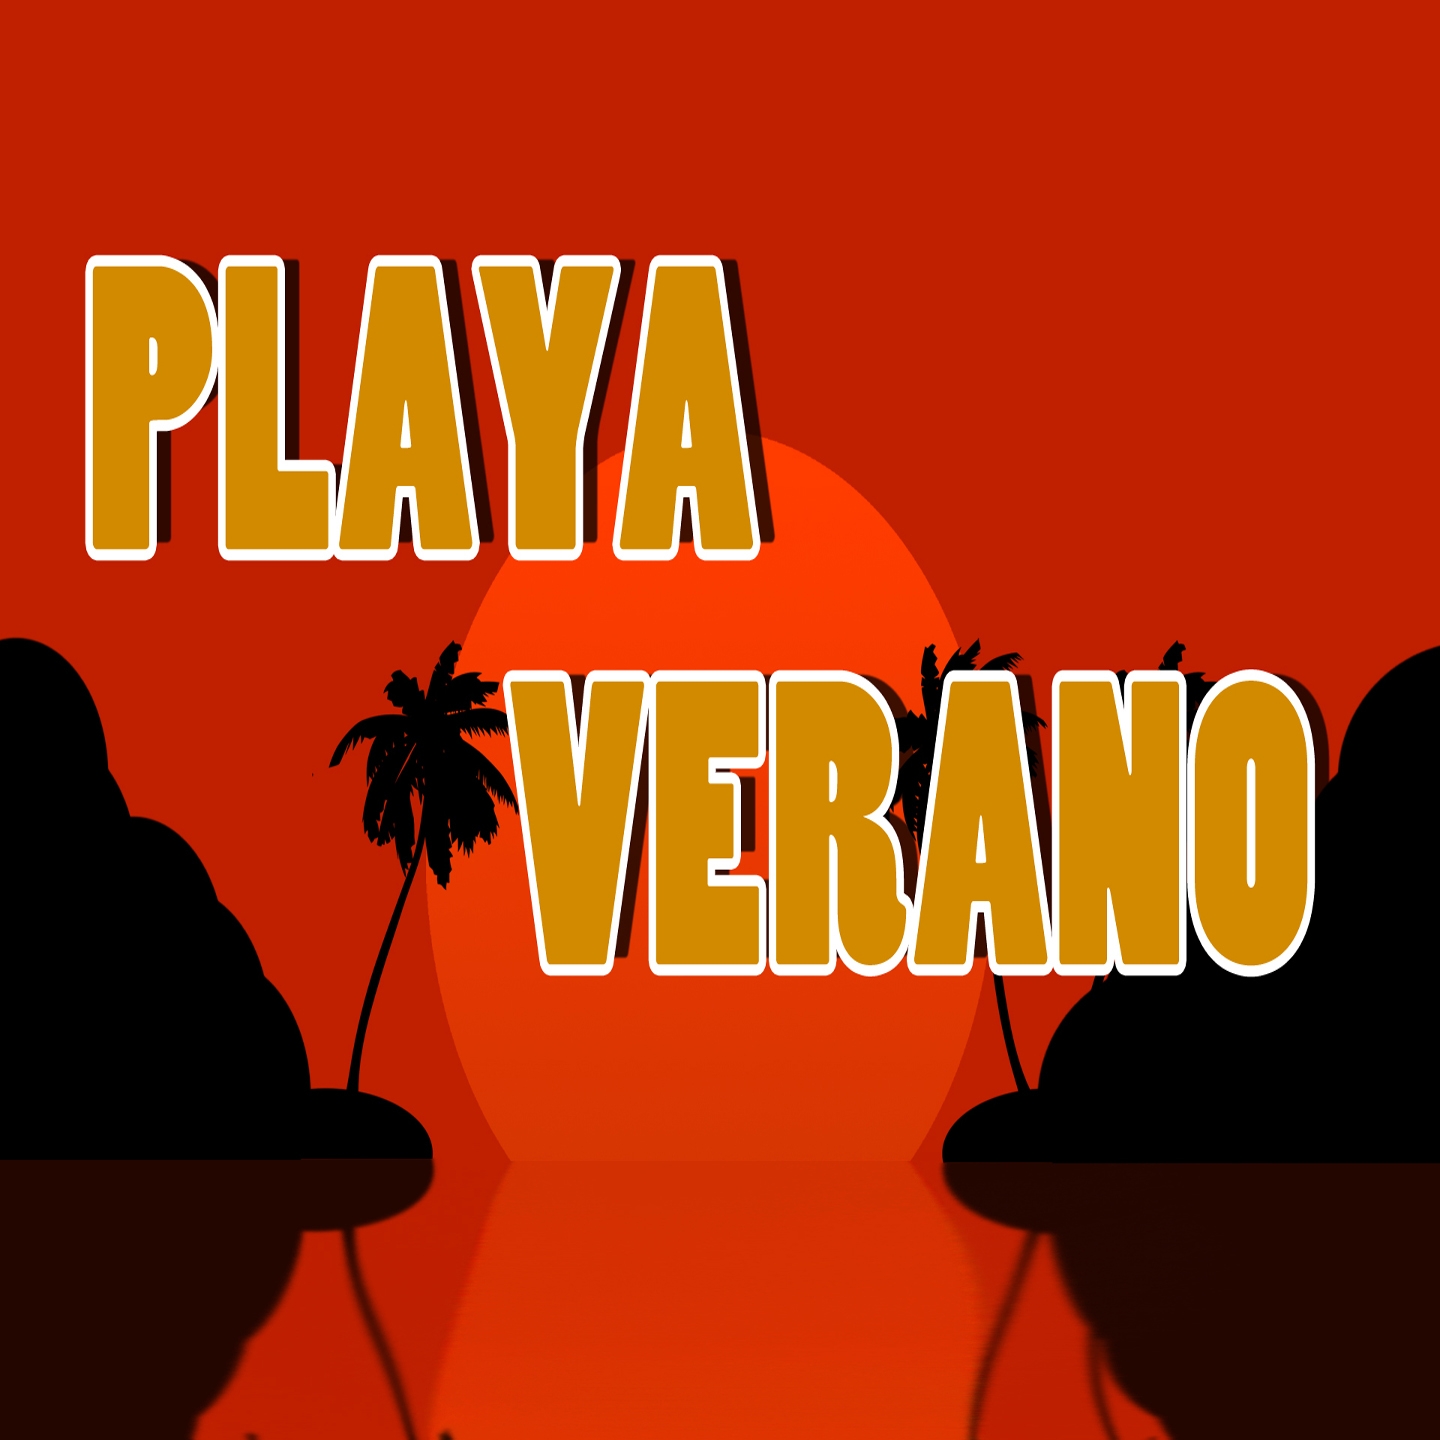 Playa Verano